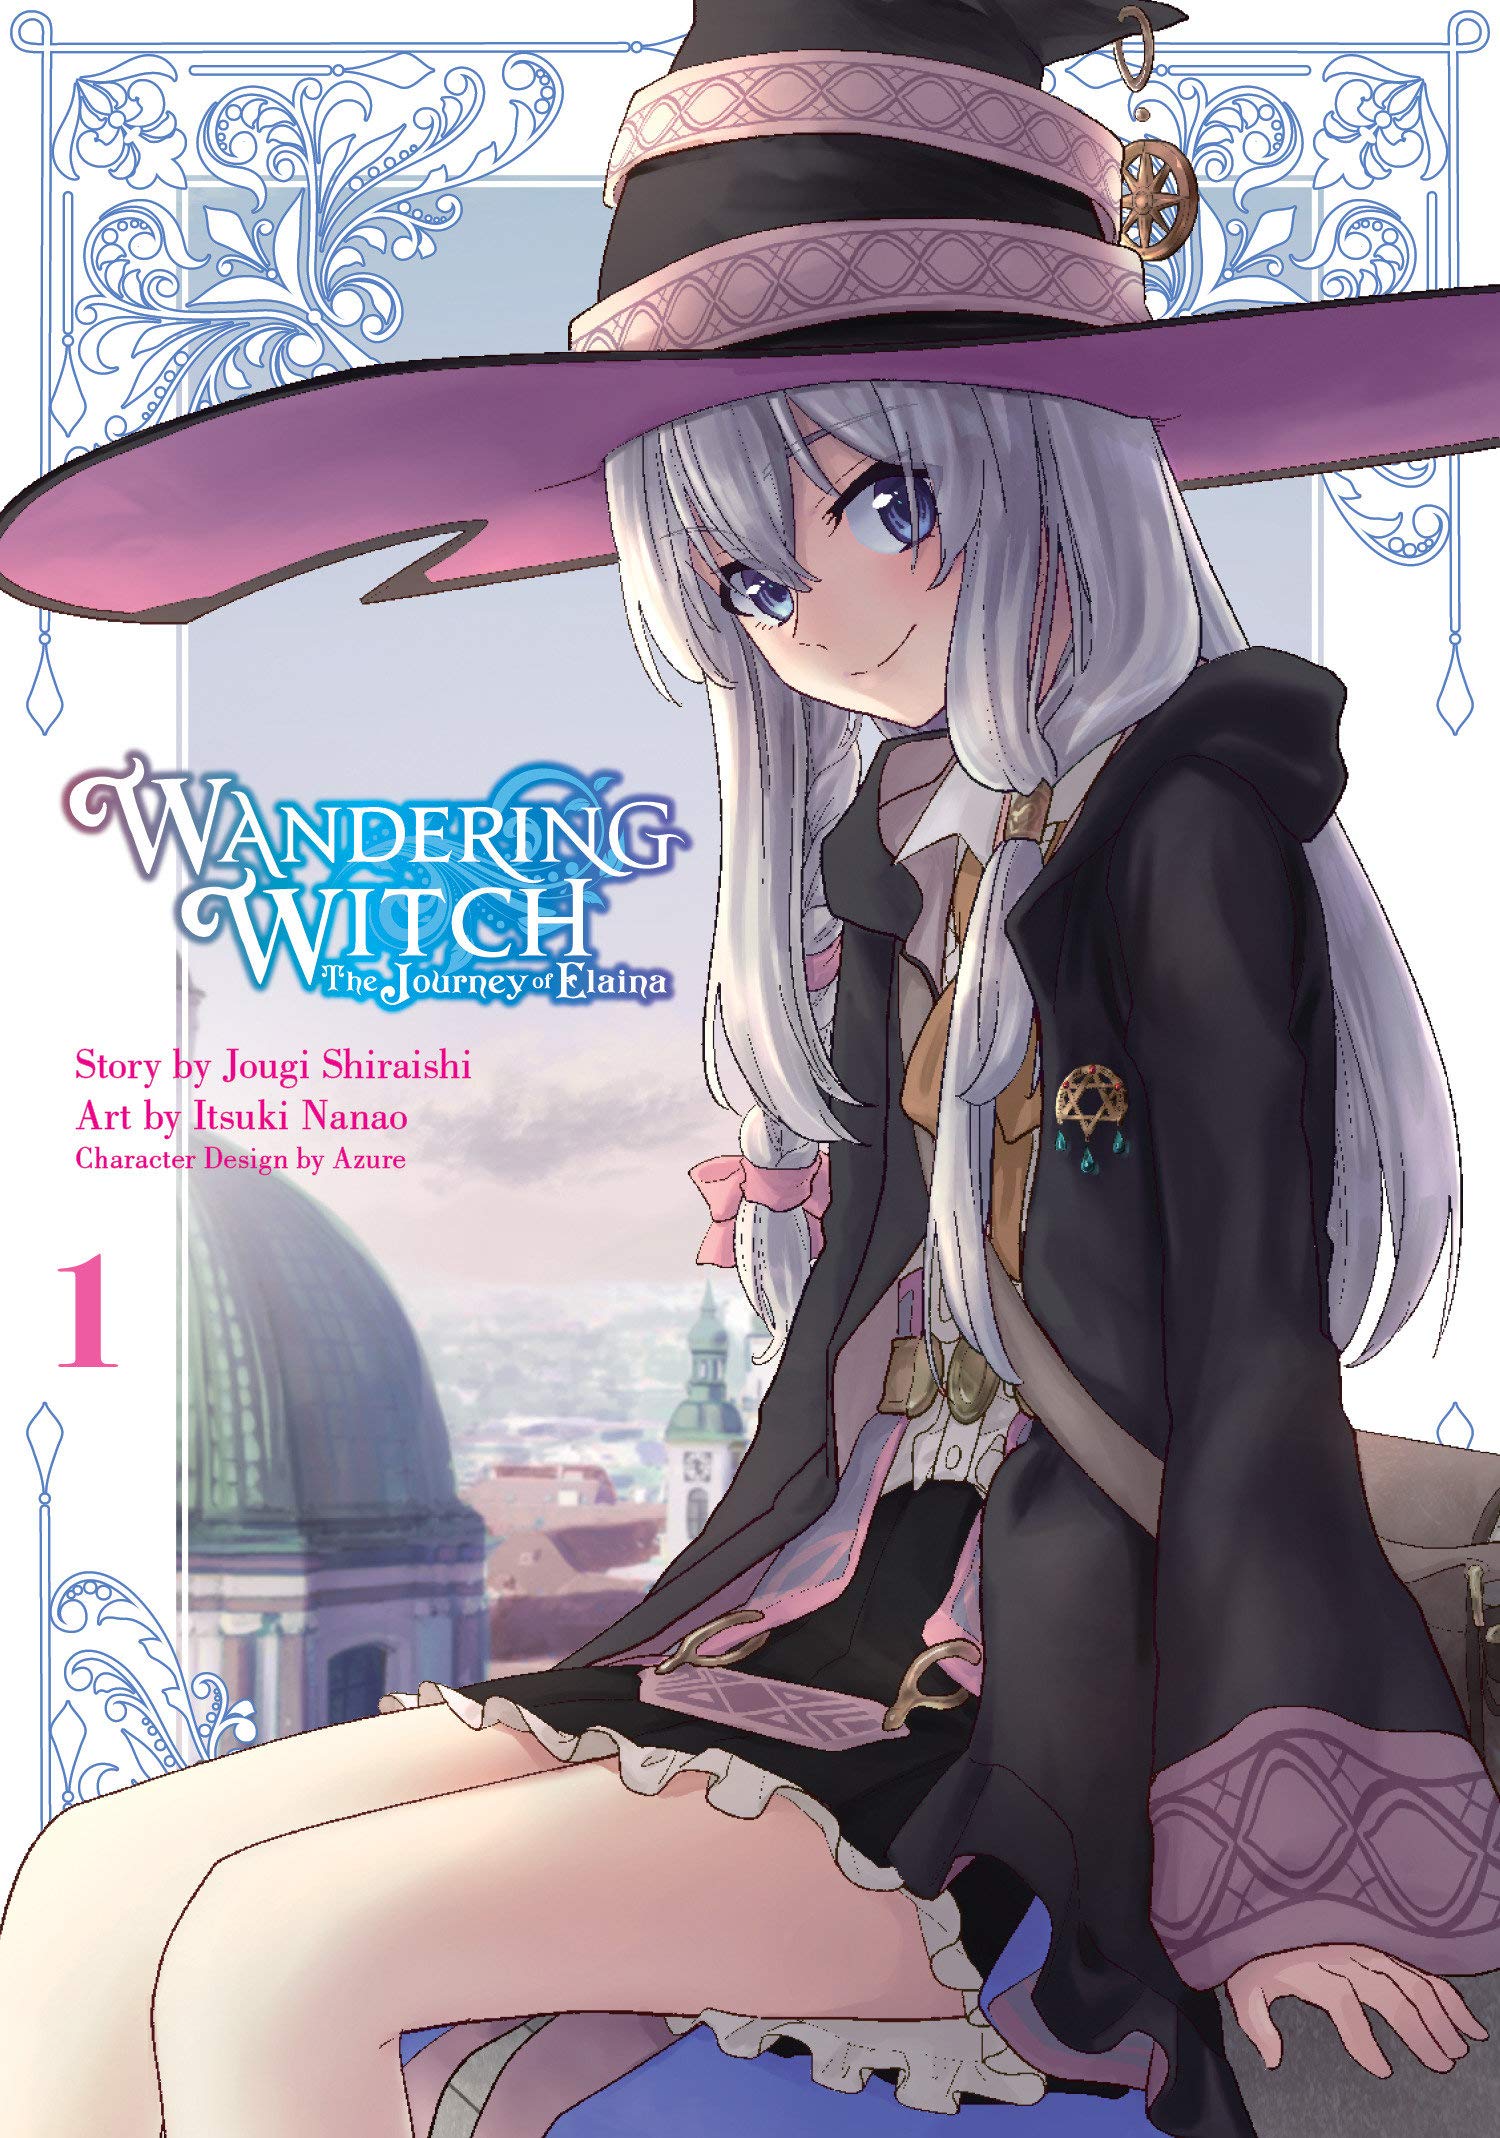 Wandering Witch (Manga) 01: The Journey of Elaina: Shiraishi, Jougi, Nanao, Itsuki, Azure: 9781646090358: Books